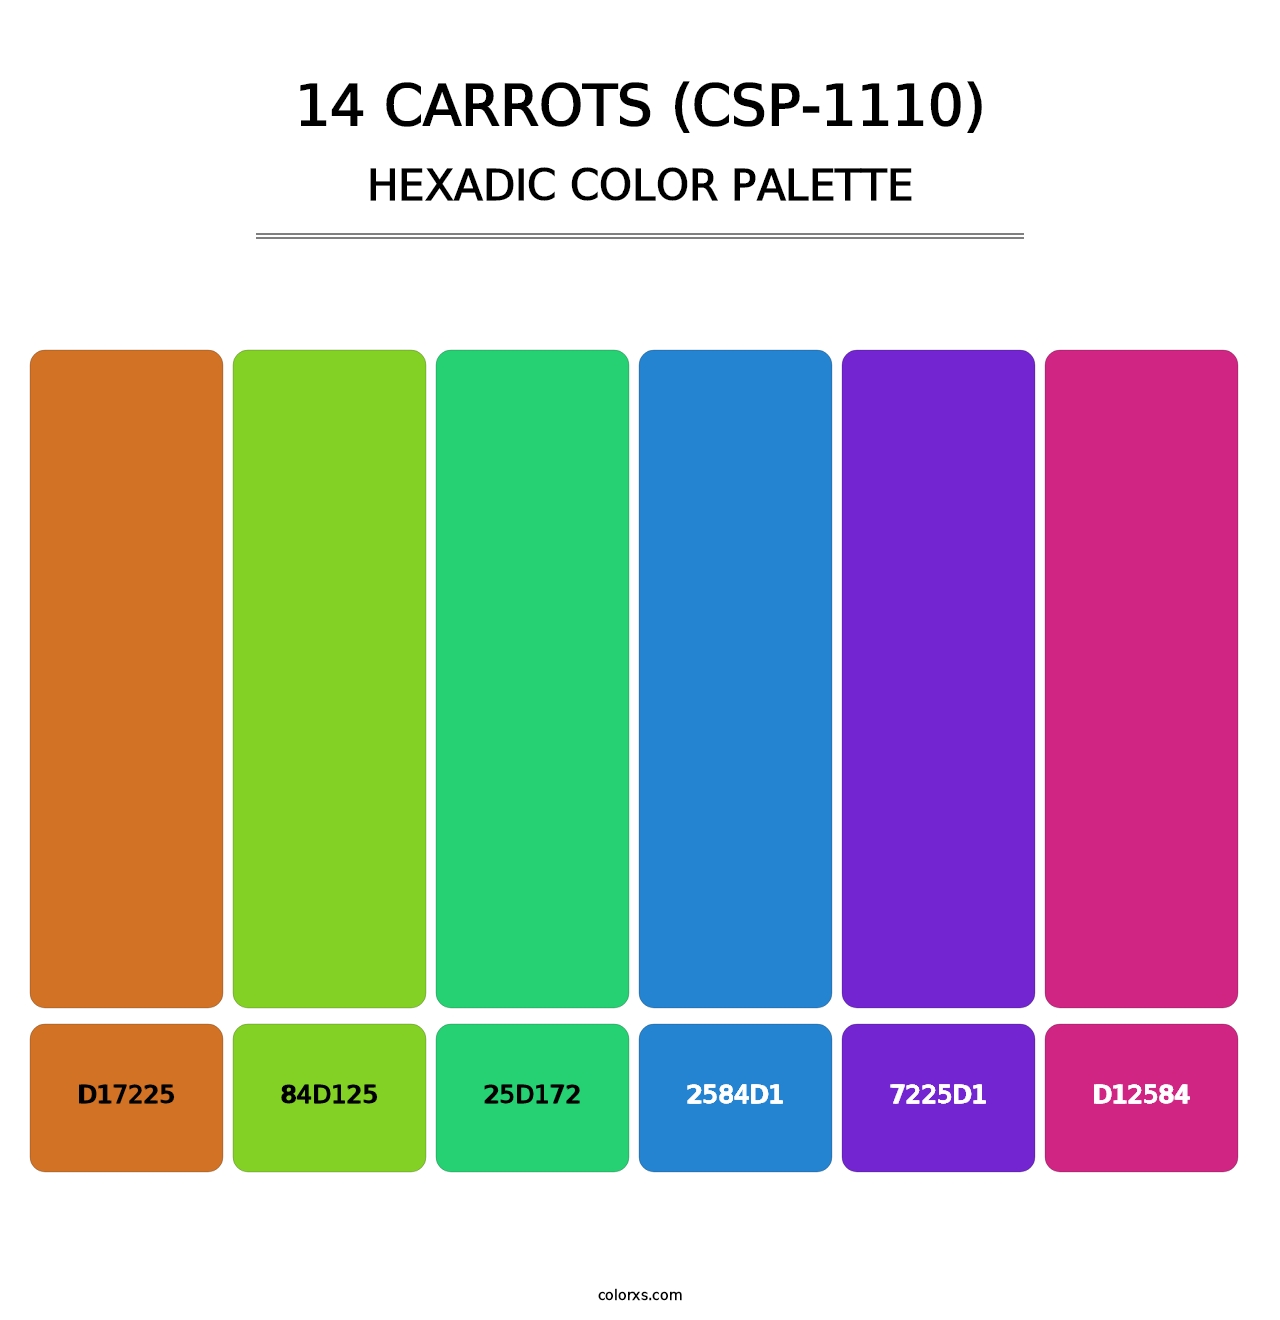 14 Carrots (CSP-1110) - Hexadic Color Palette